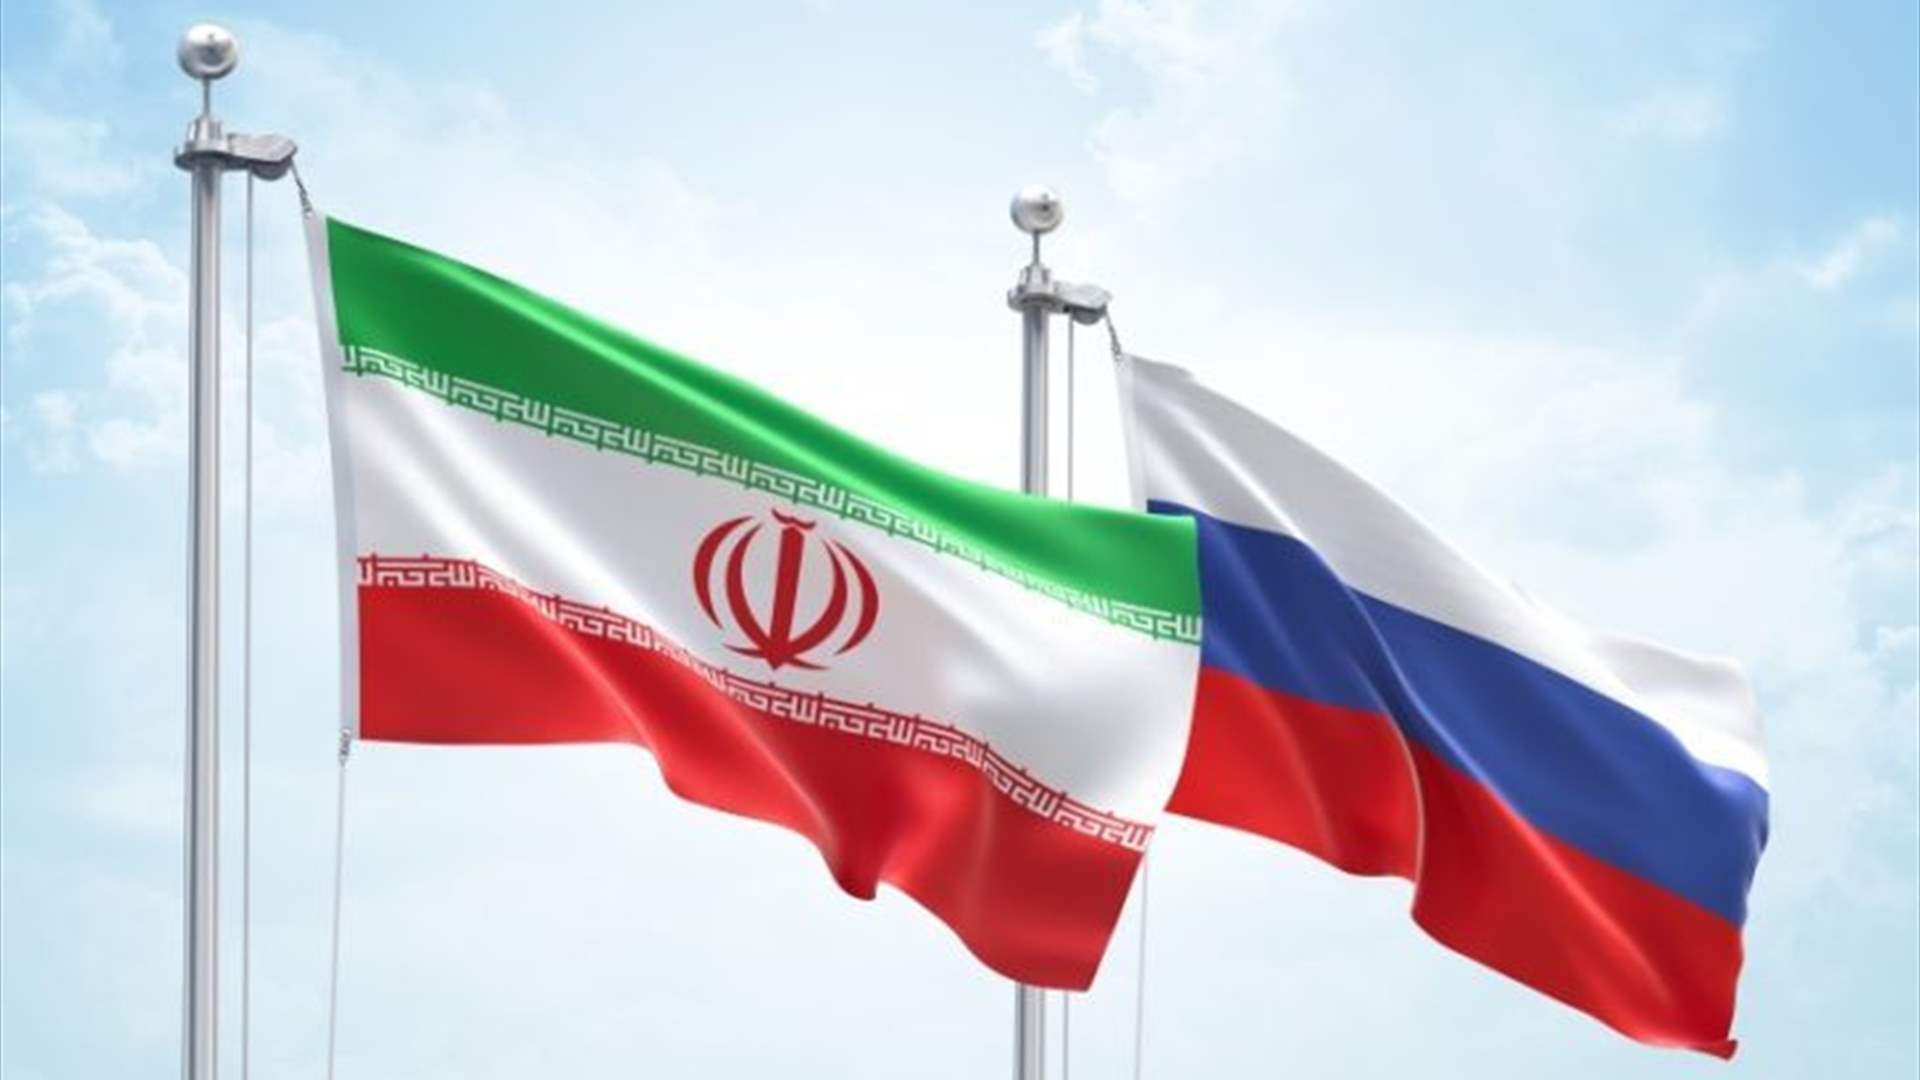 هل تشهد معاهدة إيرانية روسية النور قريبًا؟